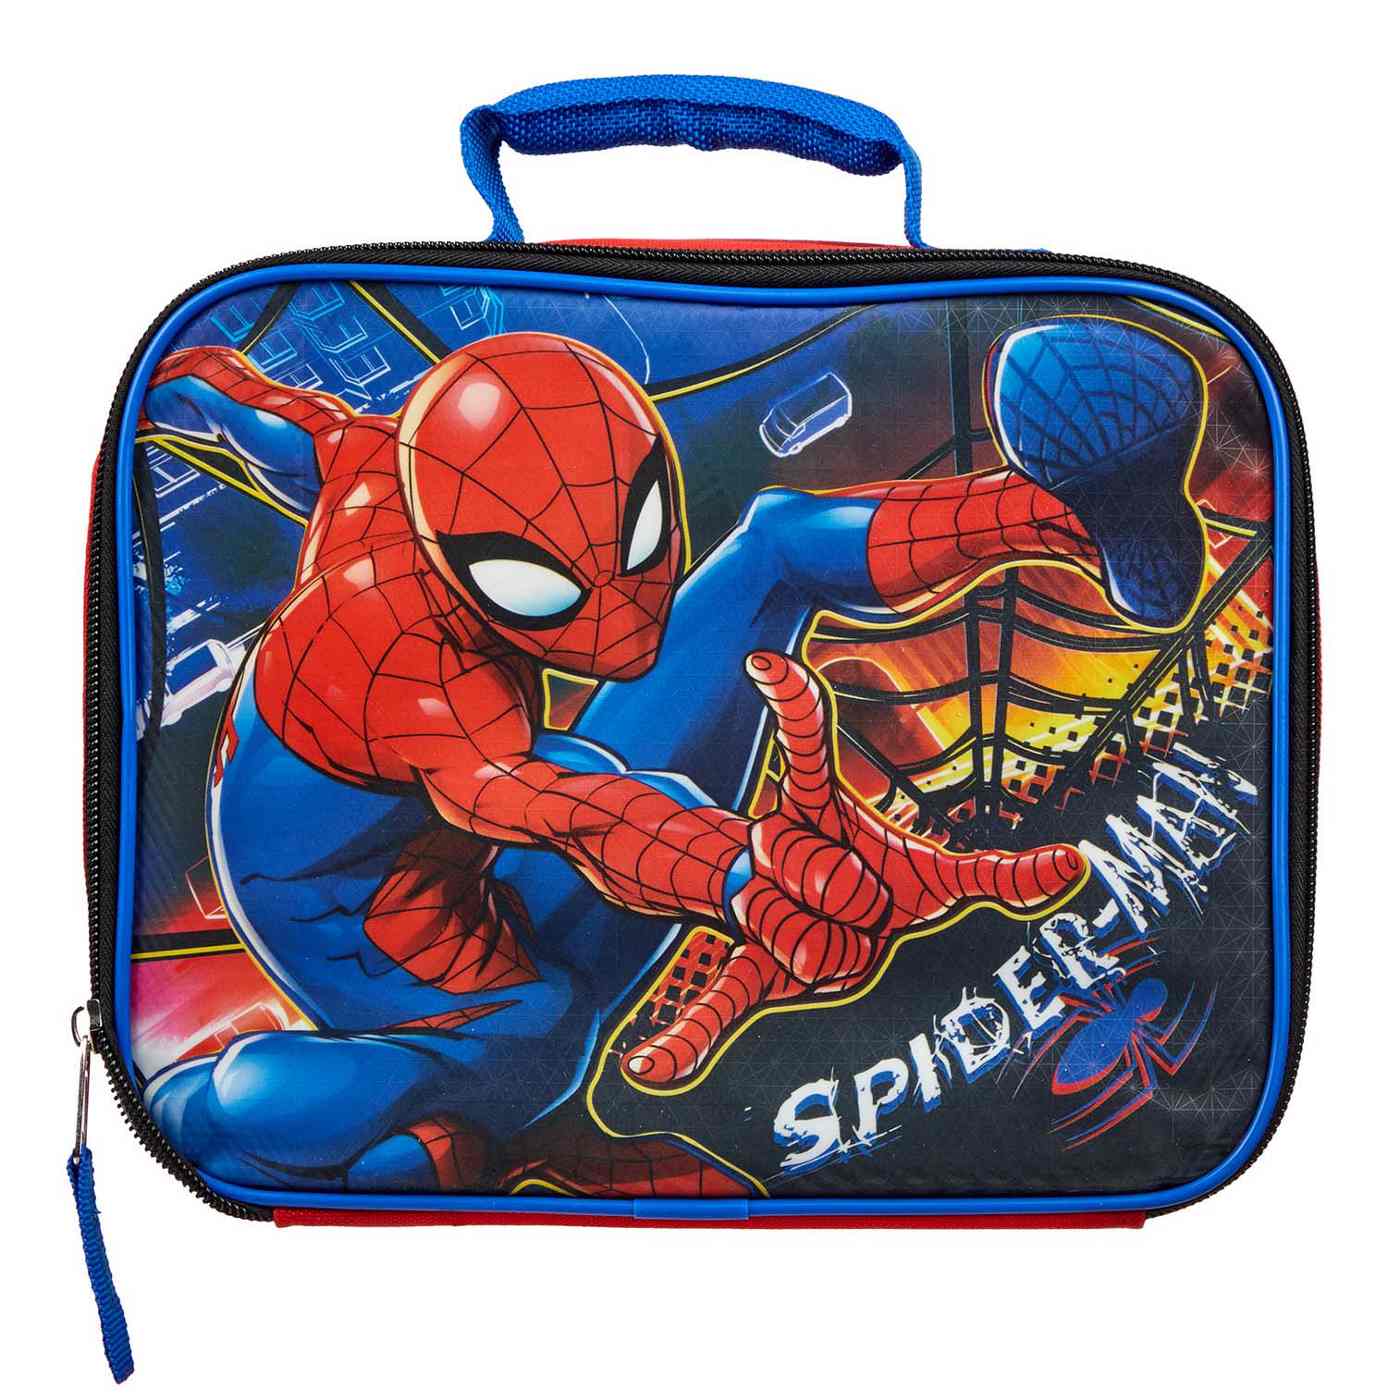 Marvel Spider-Man Lunch Bag; image 1 of 2